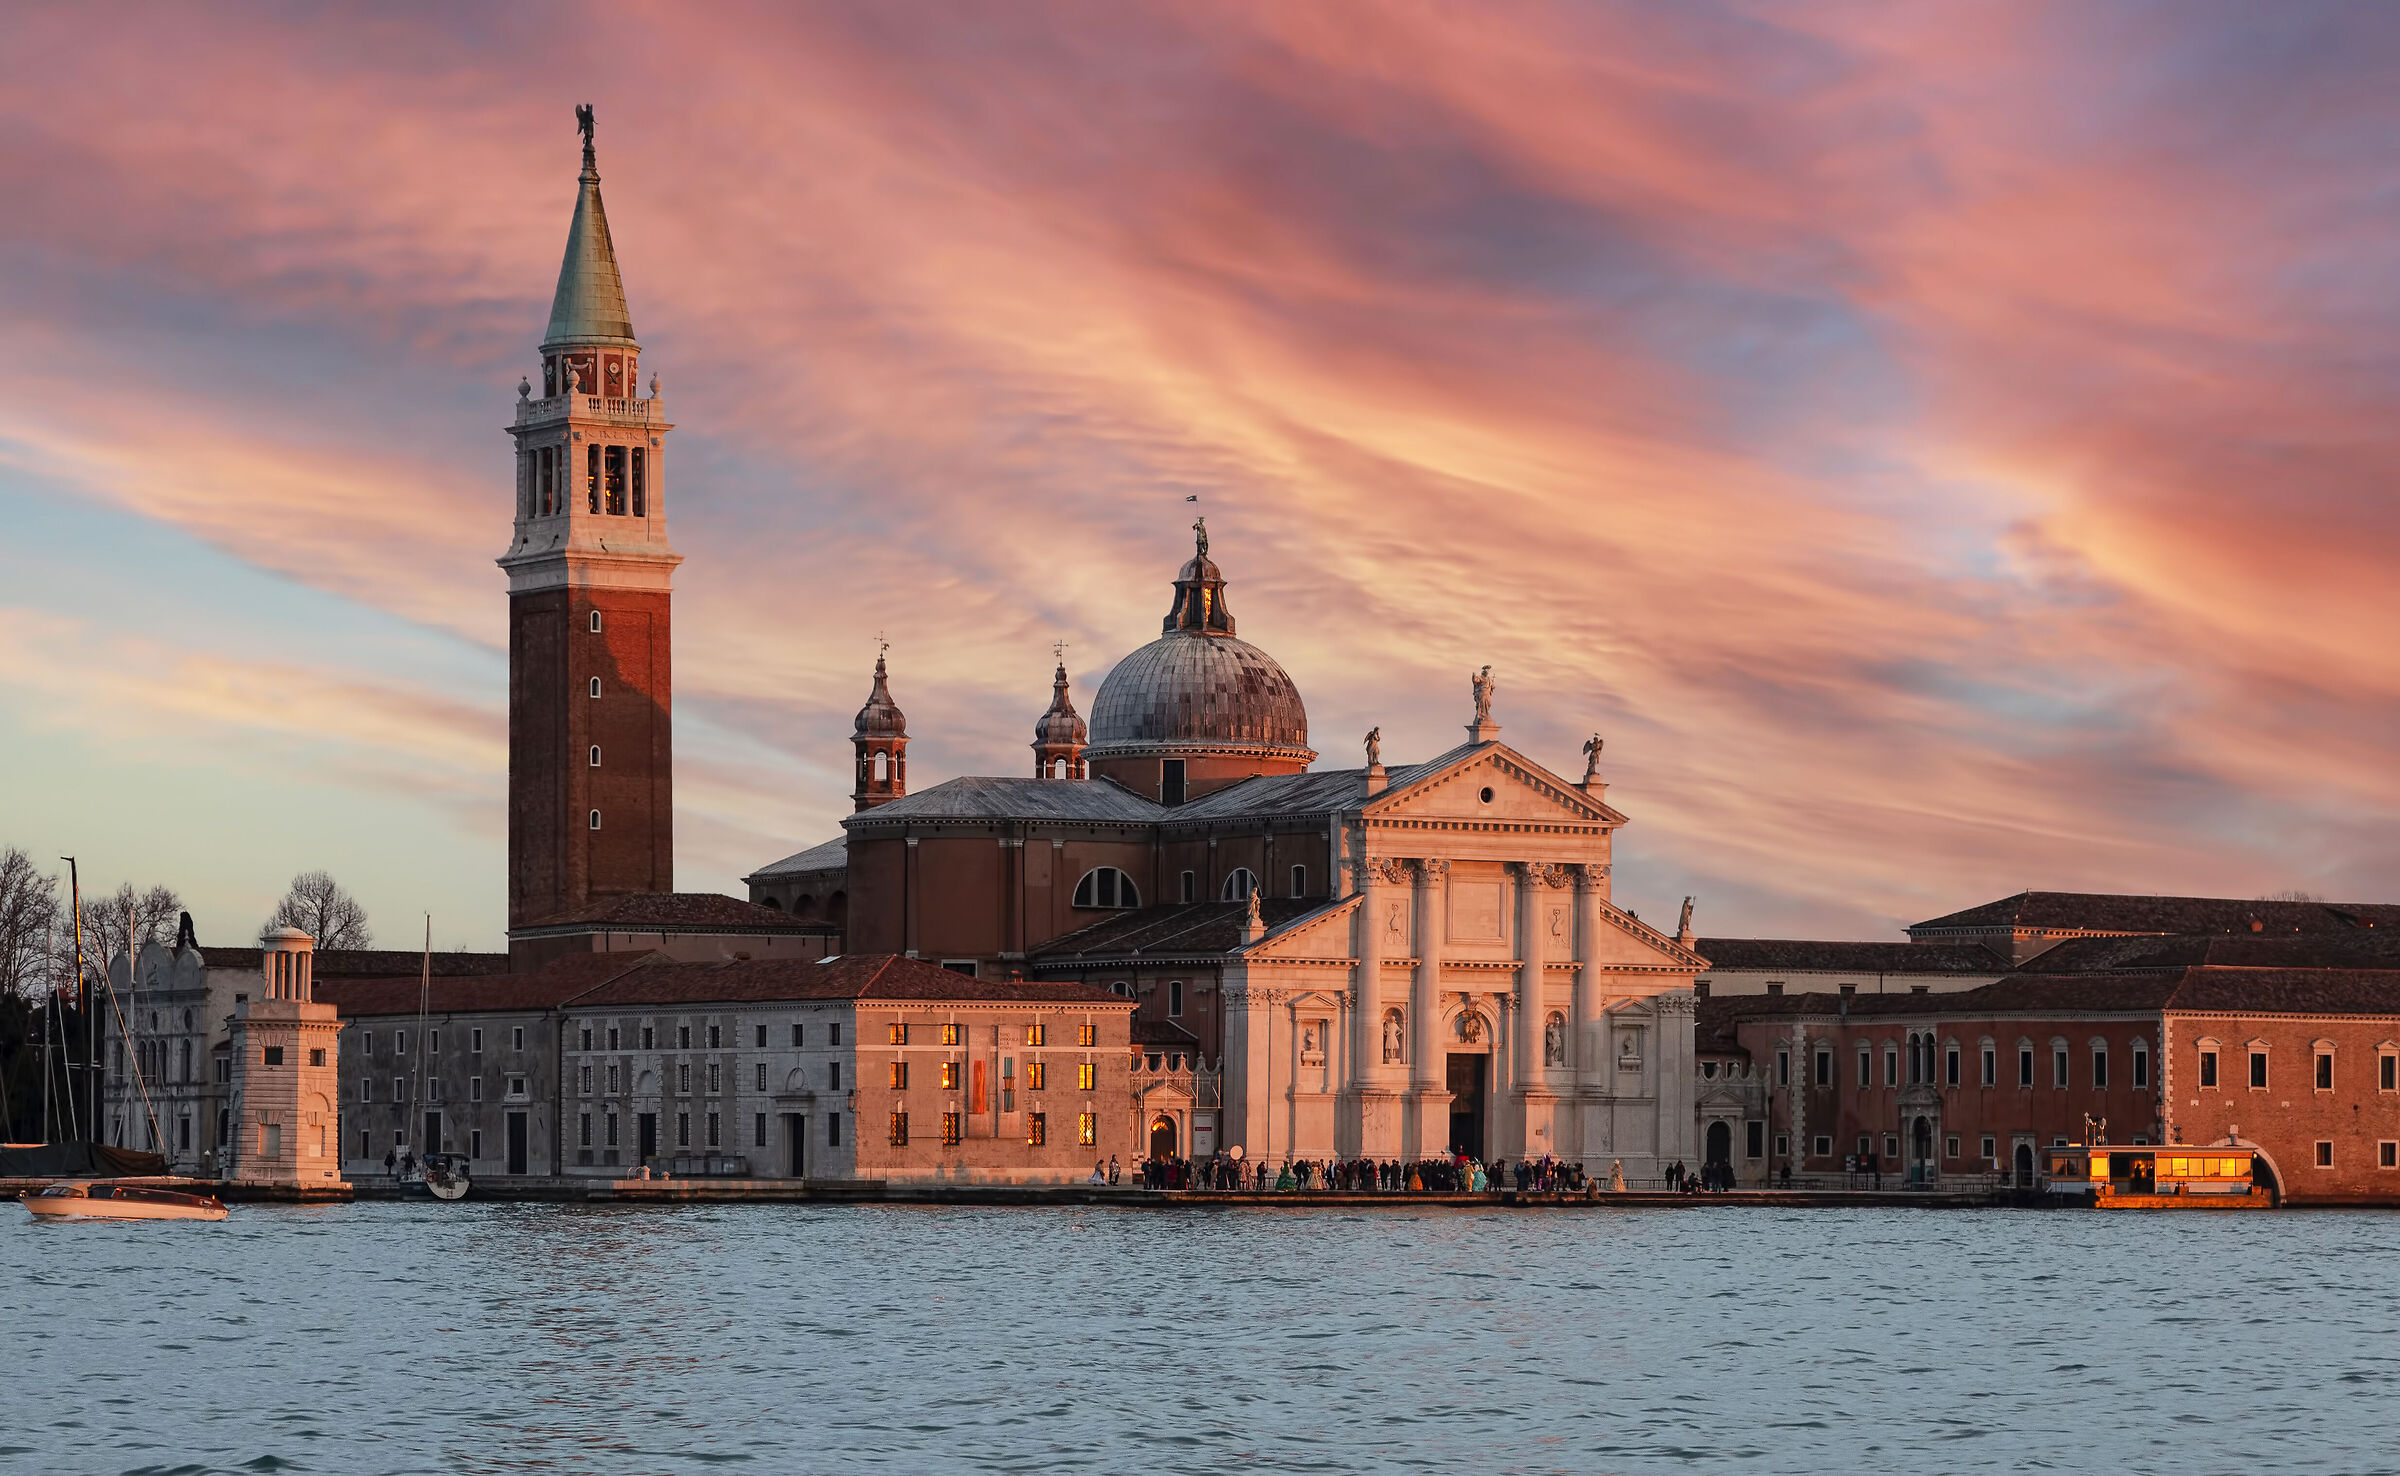  Venice 2022 "The Island of San Giorgio Maggiore"...